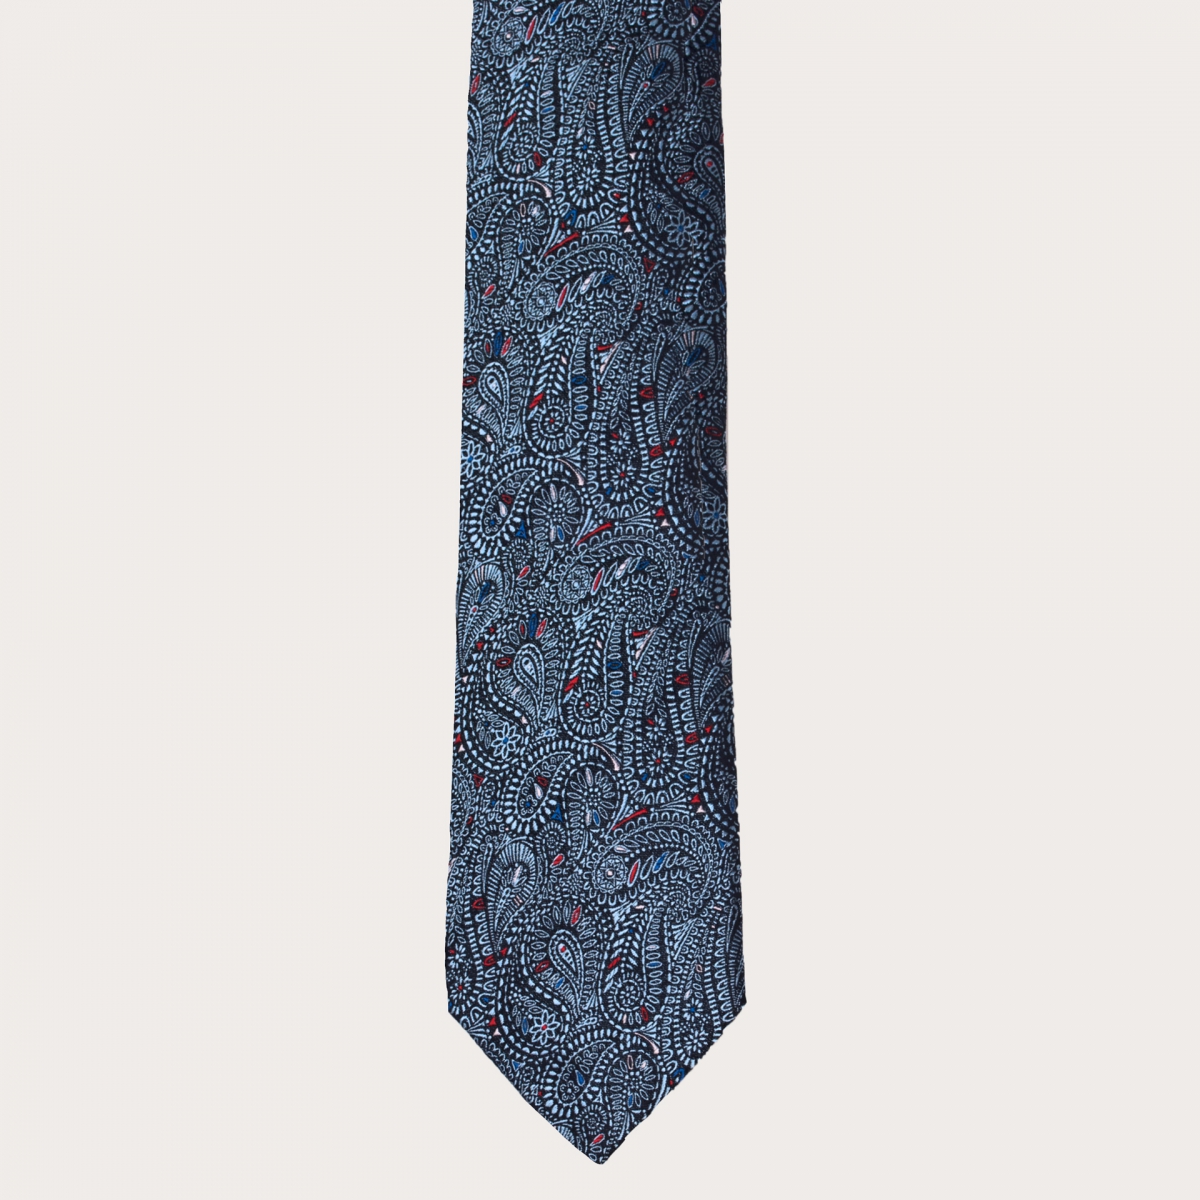 Brucle cravate bleue cachemire en soie jacquard